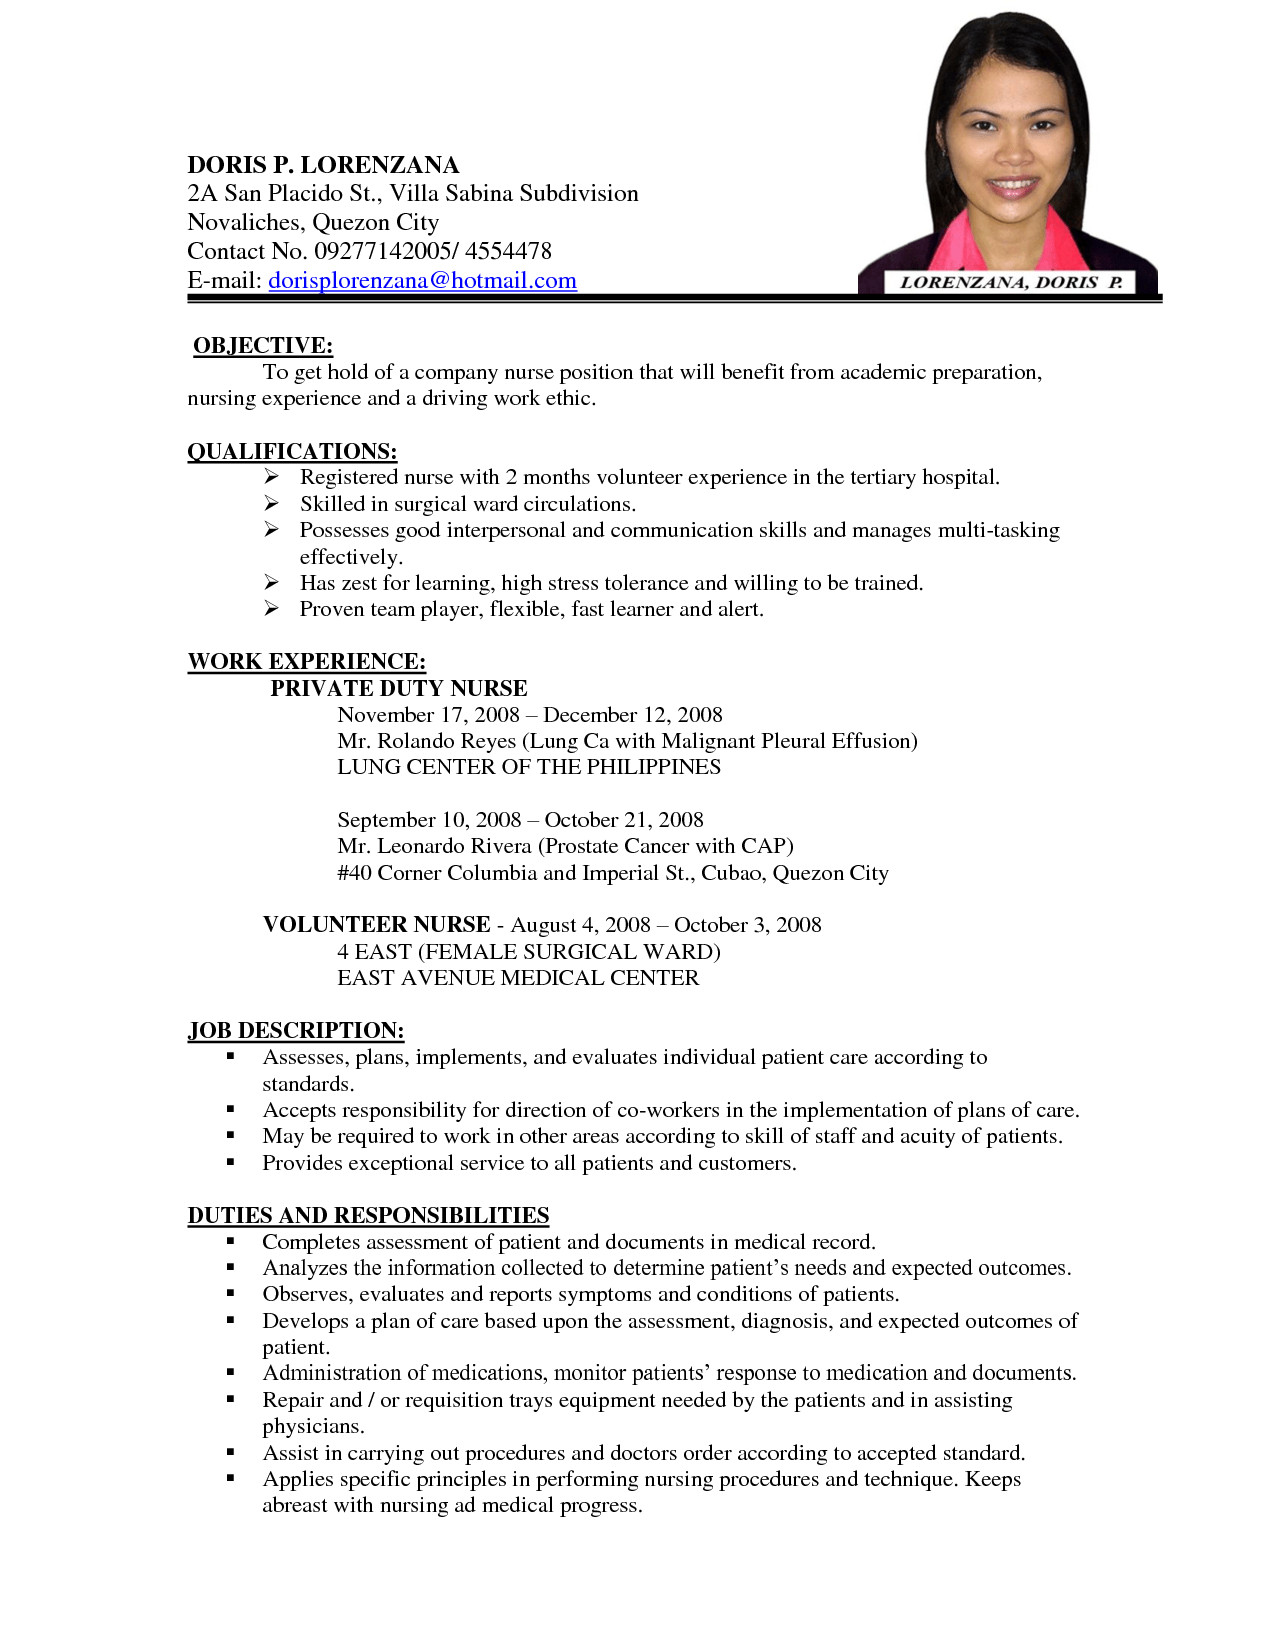 Sample Resume for Teaching Position Philippines Sample Resume Teachers Elementary Philippines